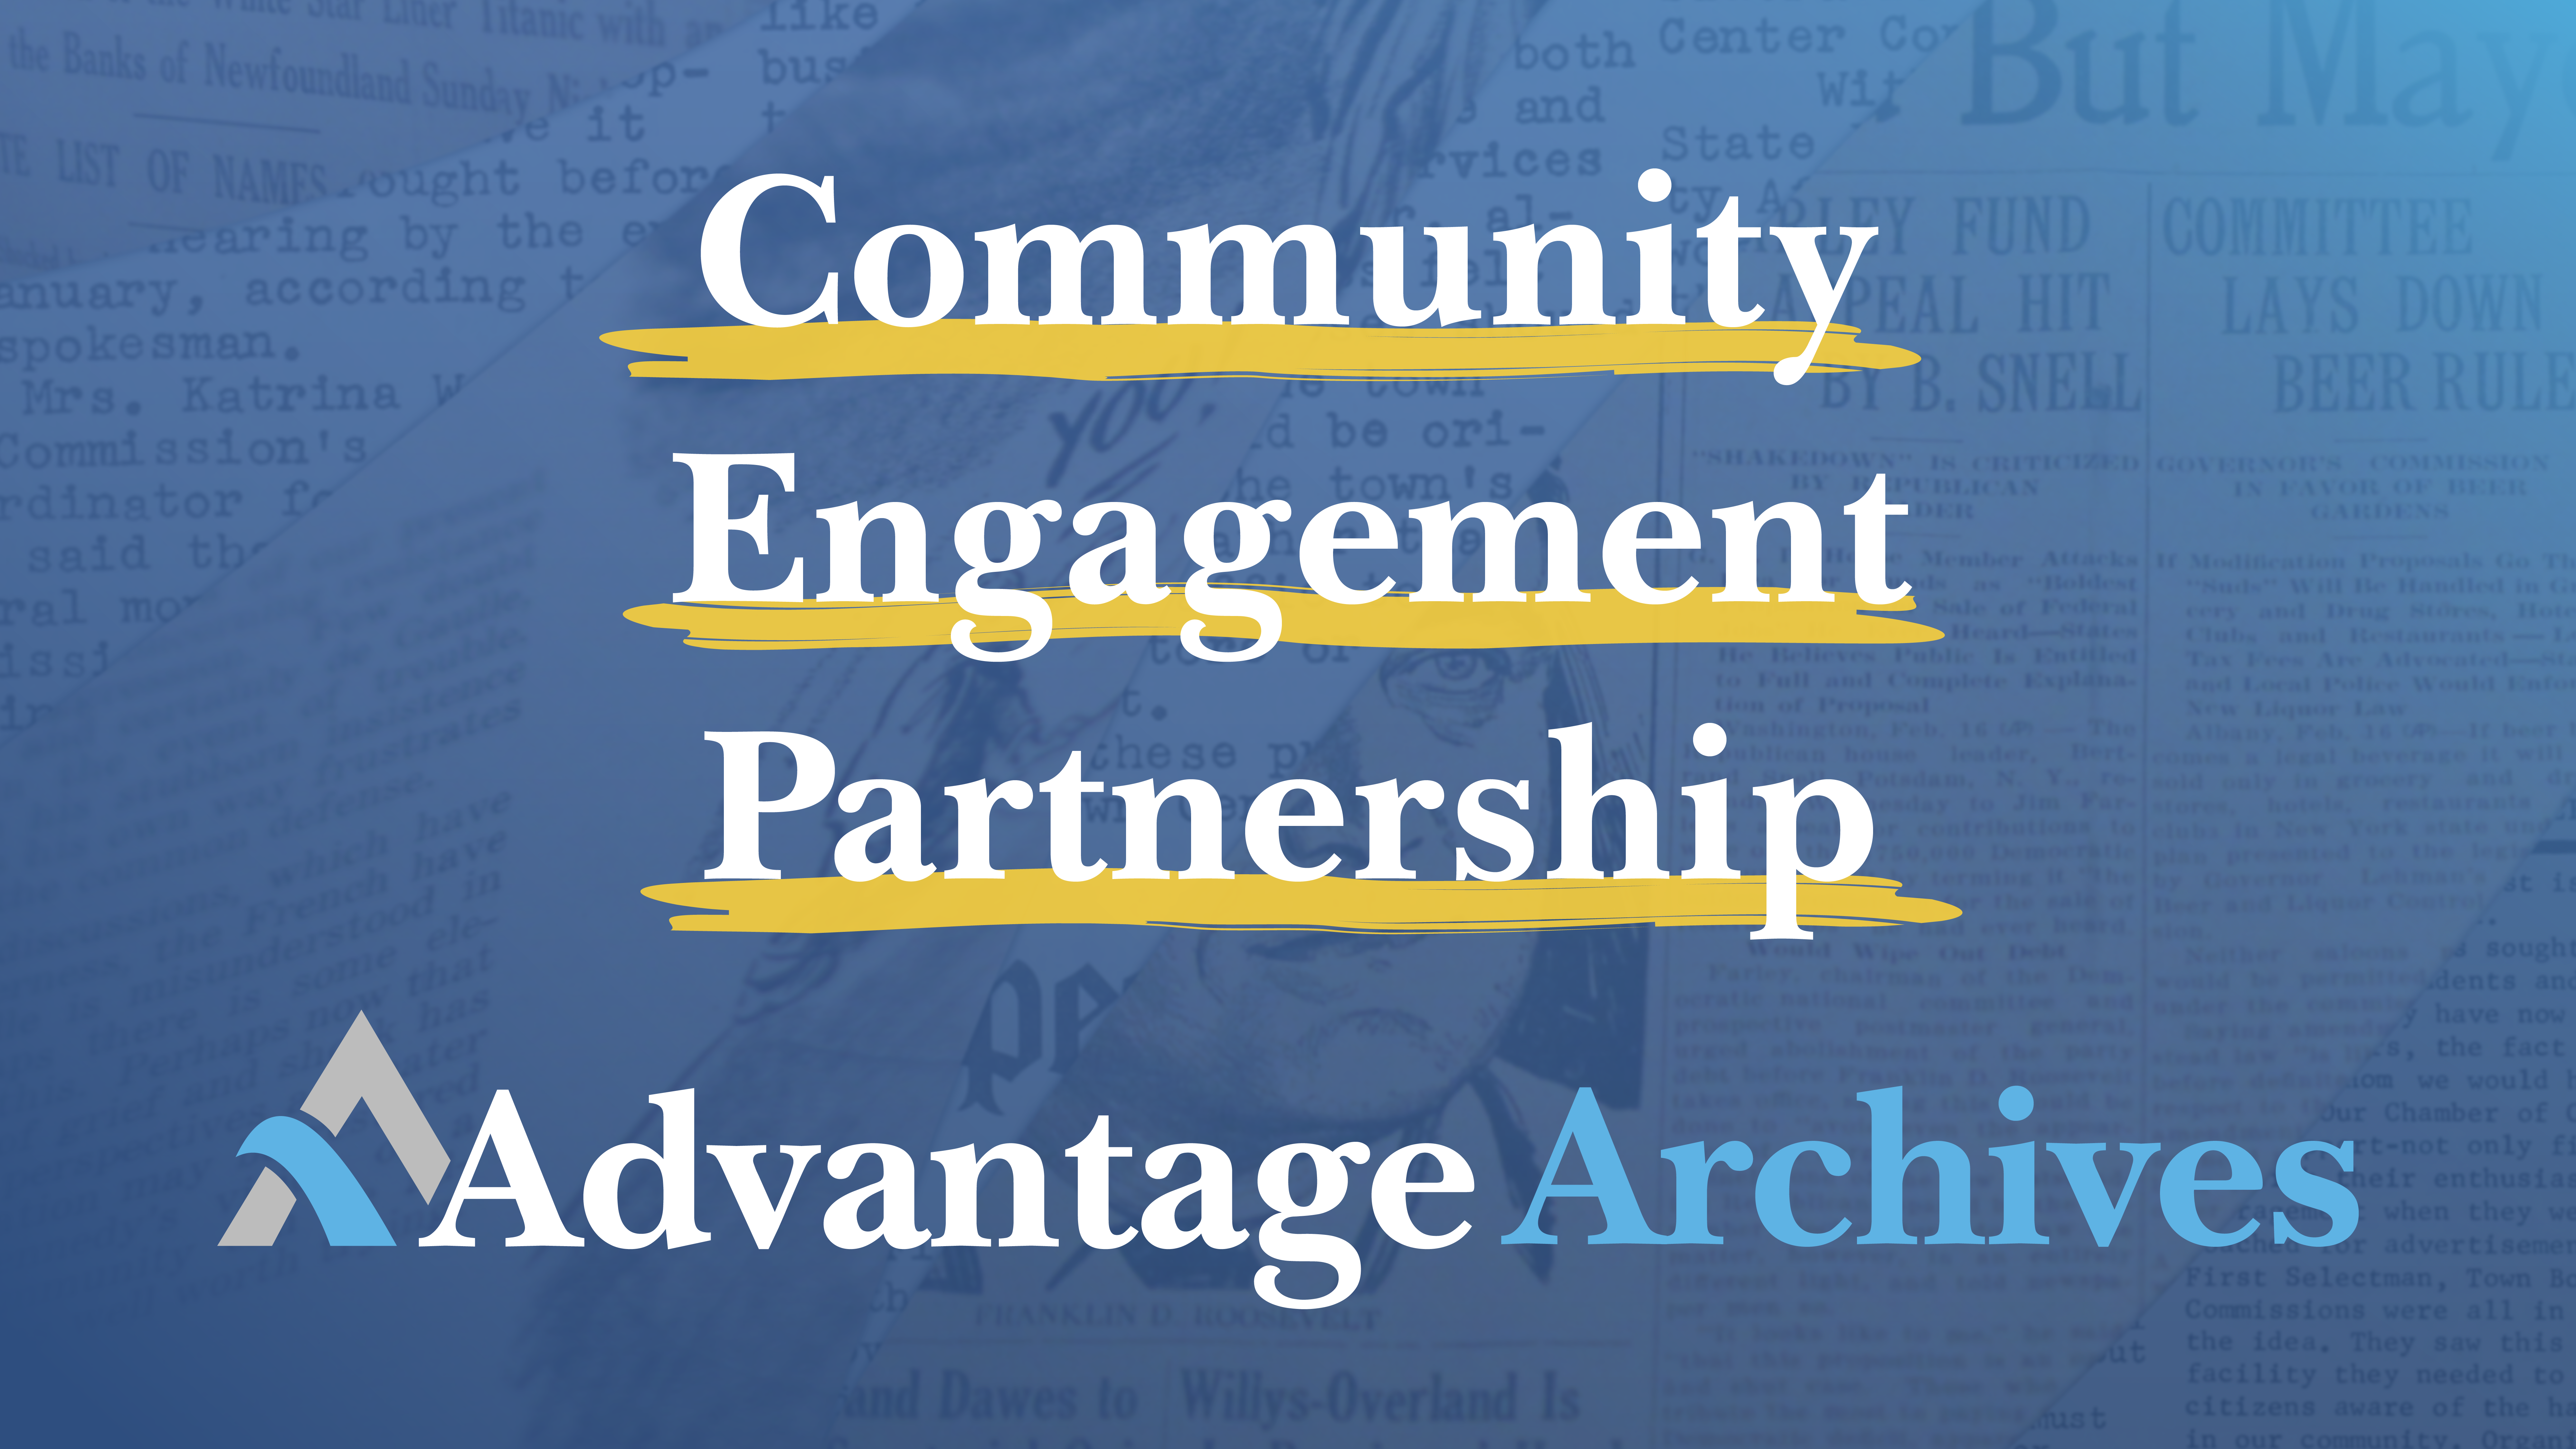 Our Core Values: Community, Partnership, Engagement